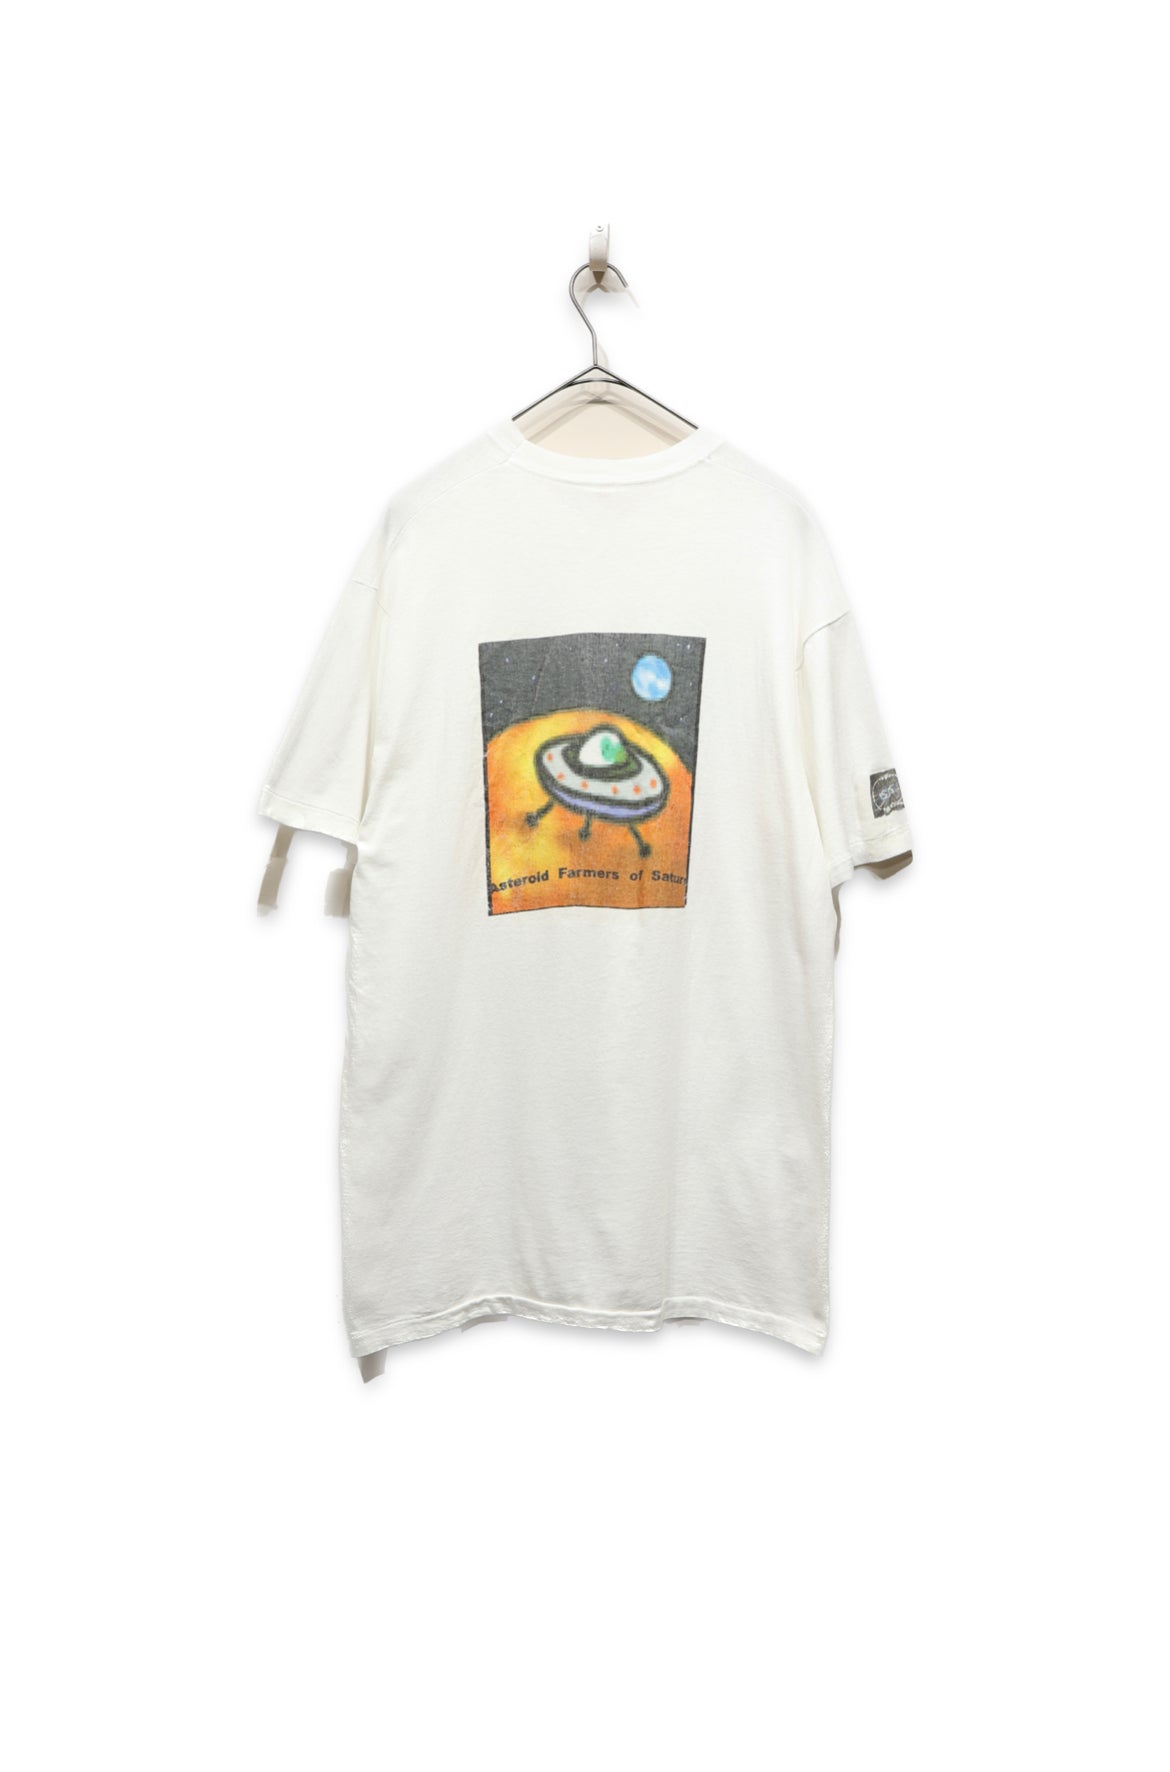 90's print t-shirt